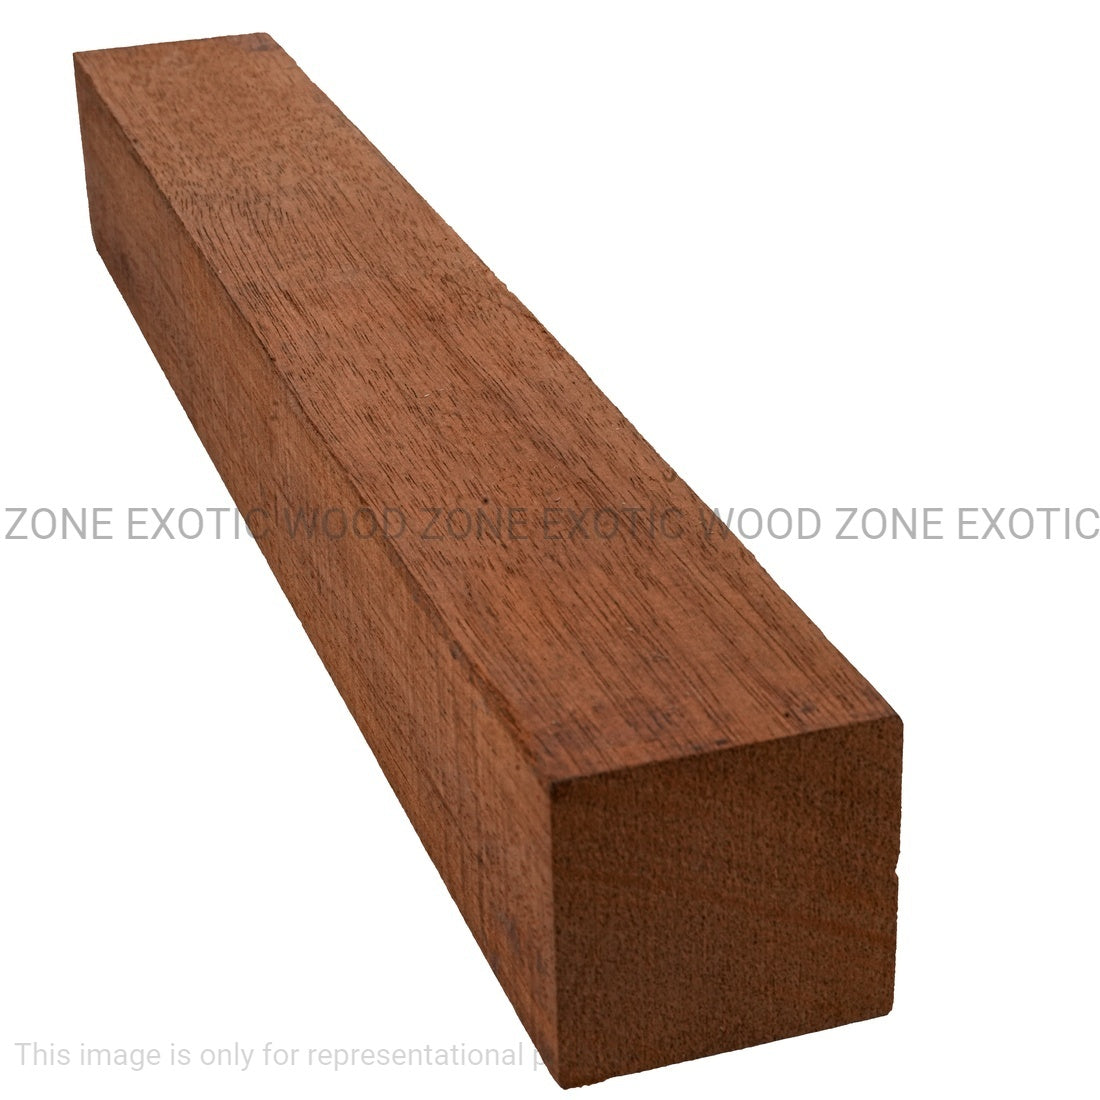 Combo Pack 10, Genuine Honduran Mahogany Turning Blanks 18” x 2” x 2” - Exotic Wood Zone - Buy online Across USA 